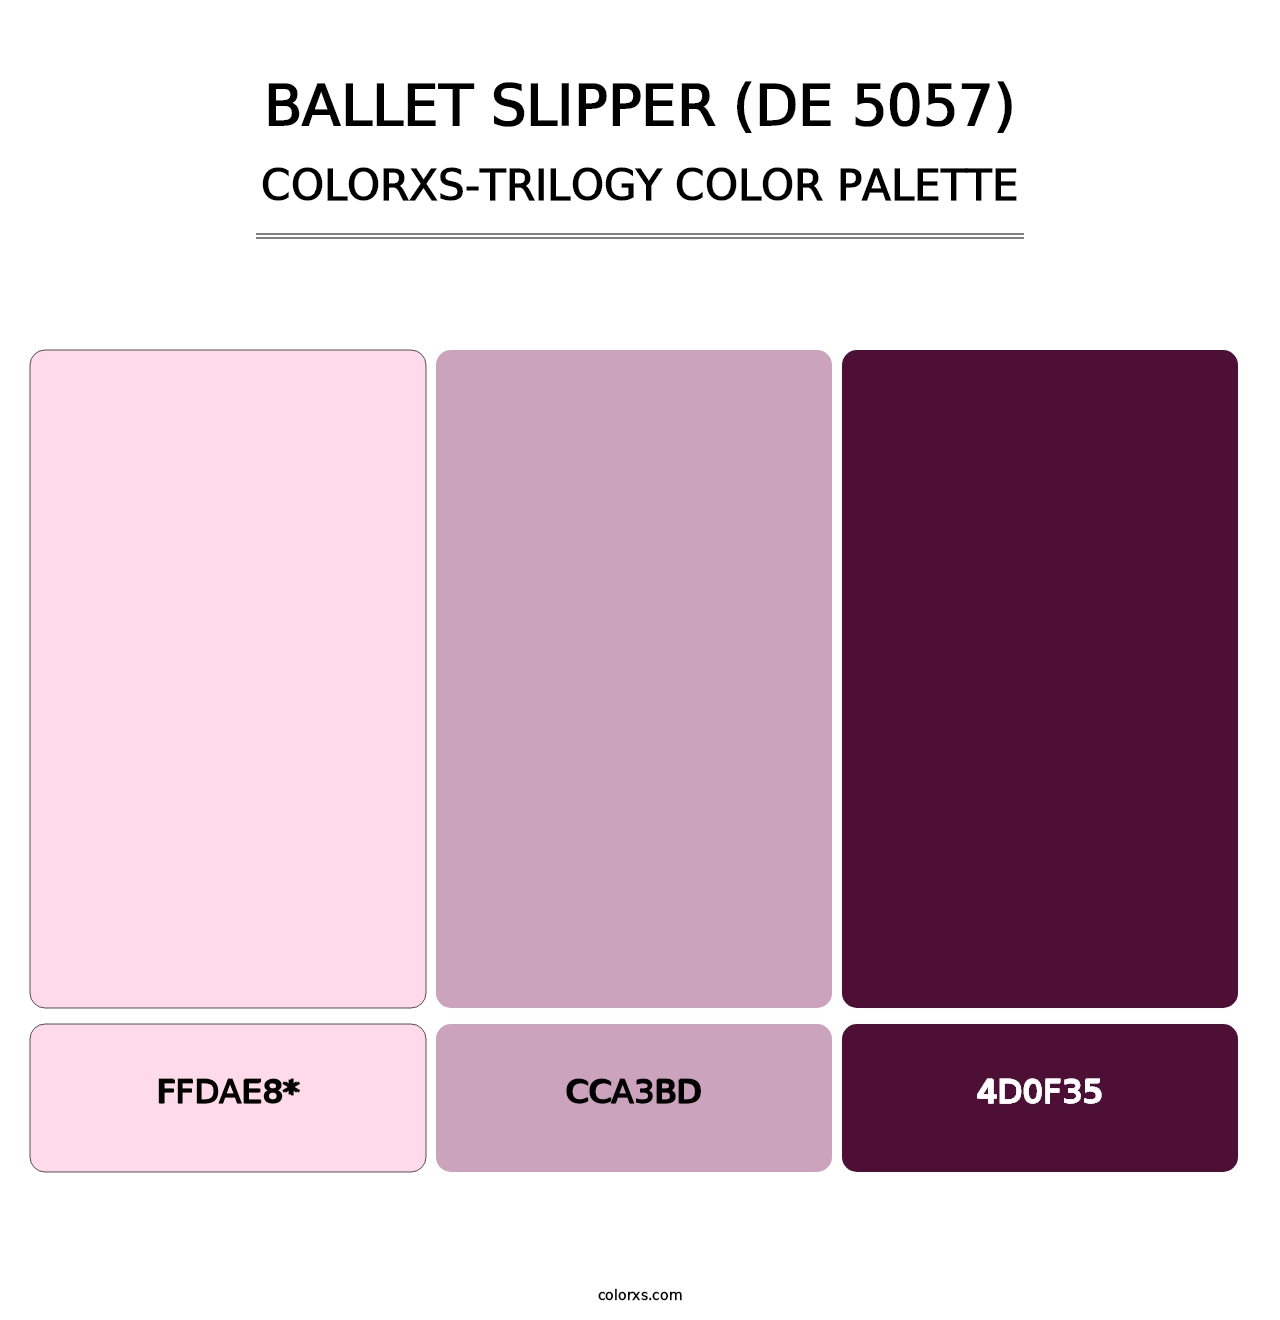 Ballet Slipper (DE 5057) - Colorxs Trilogy Palette